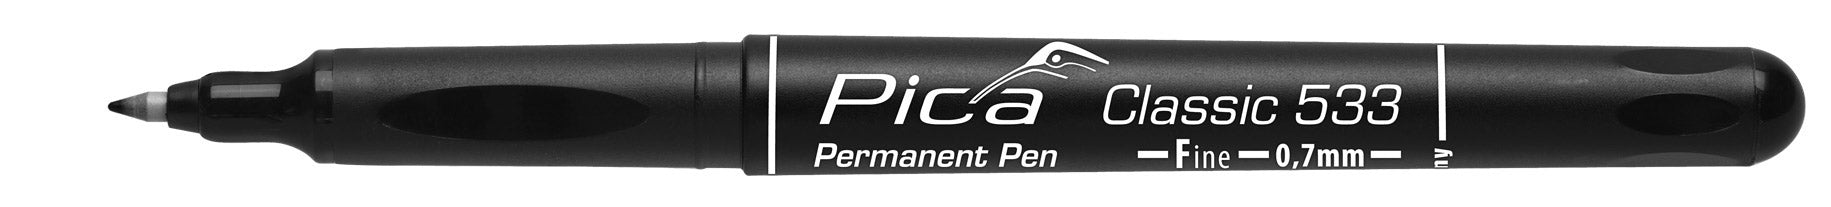 Pica Classic 533 Permanent Pen